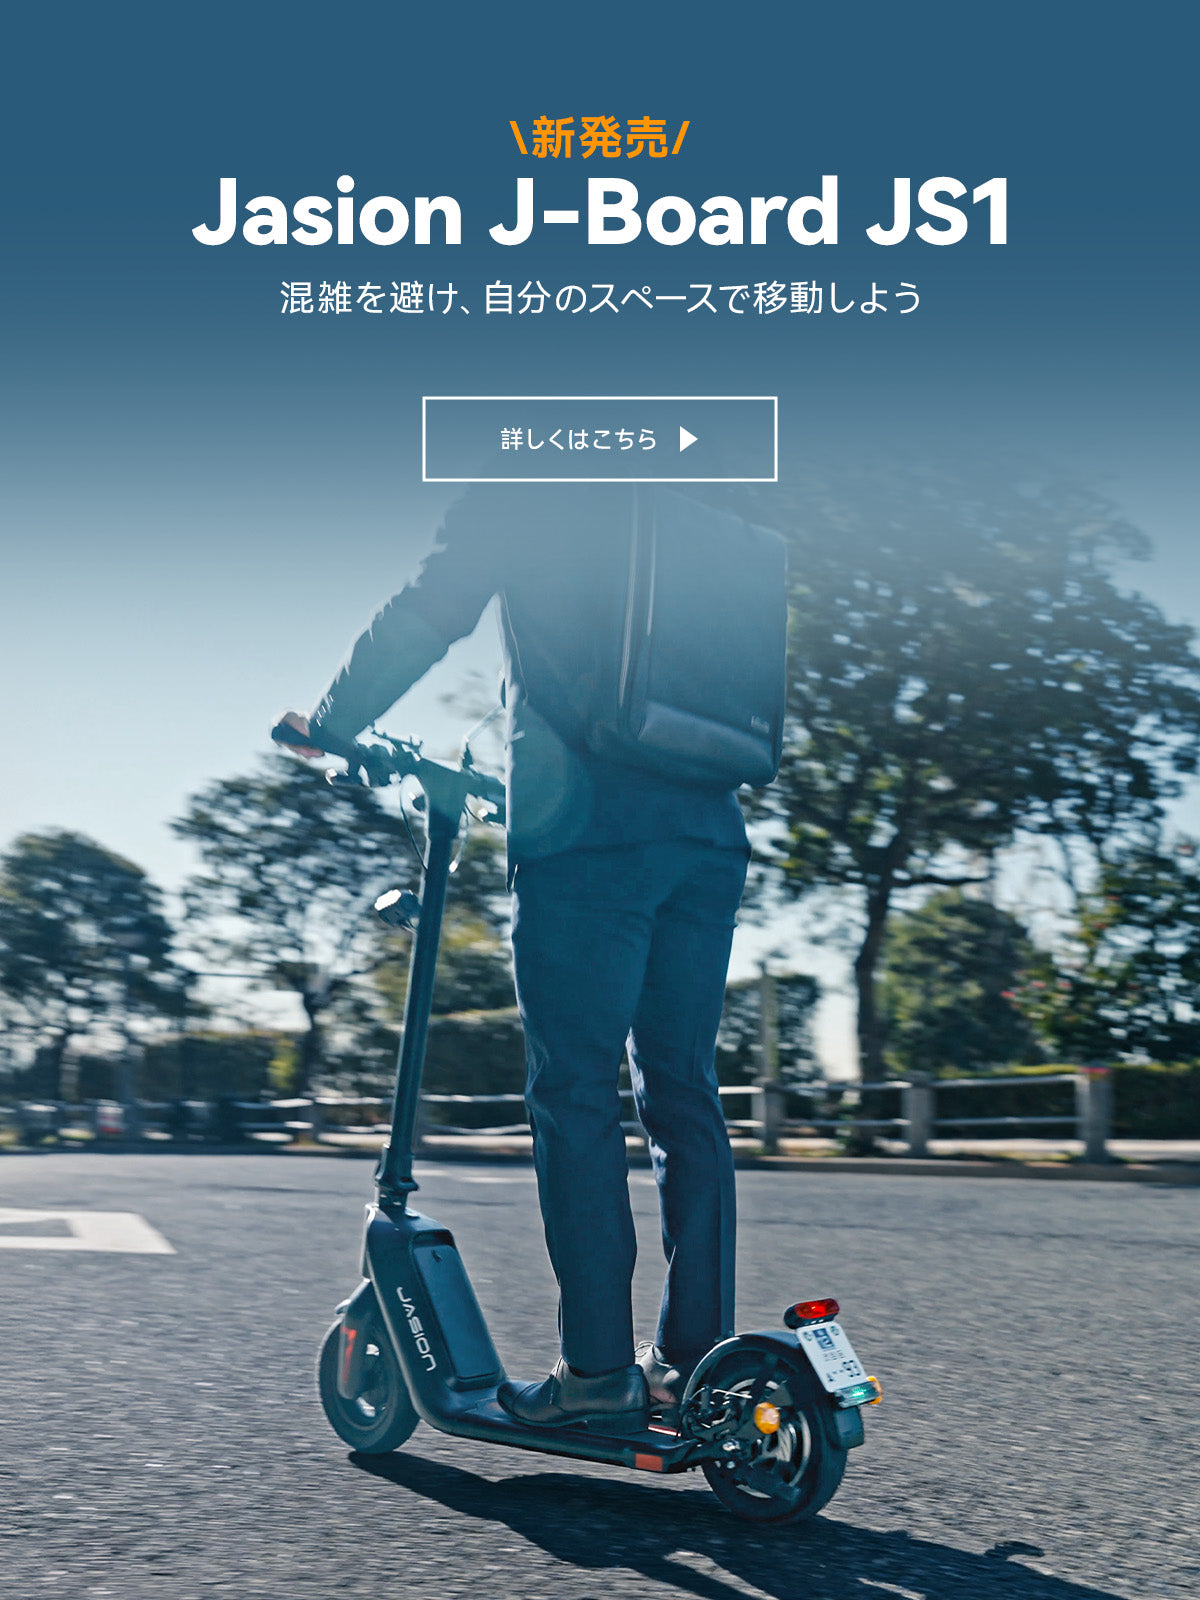 Jasion J-Board」毎日の交通渋滞に捕らわれず、モビリティで小旅行気分を満たす。 – Jasion_jp